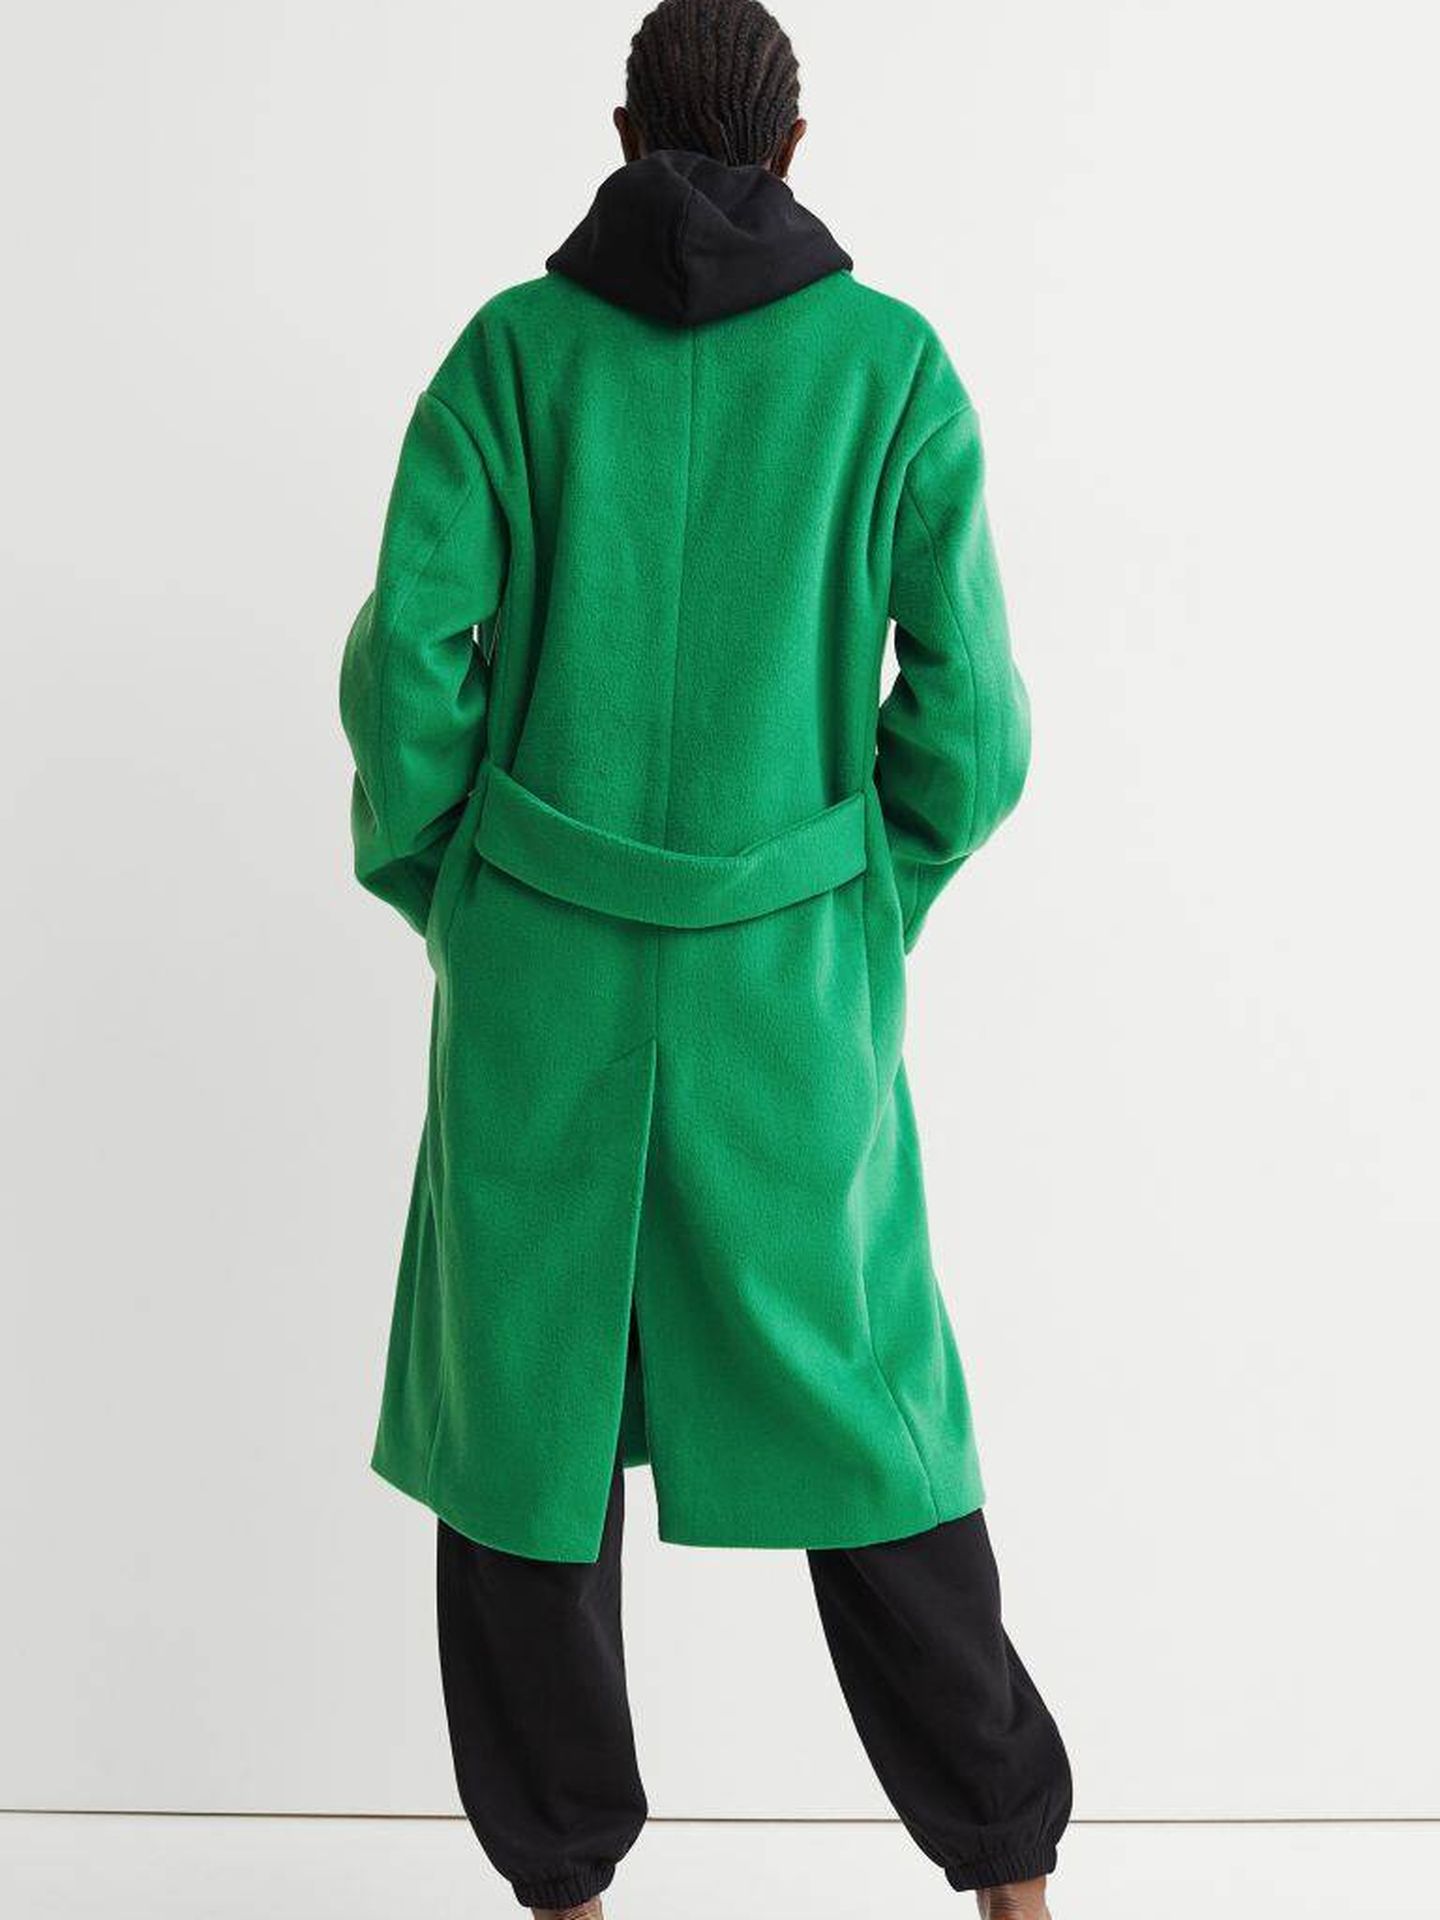 El abrigo verde de HyM. (Cortesía)